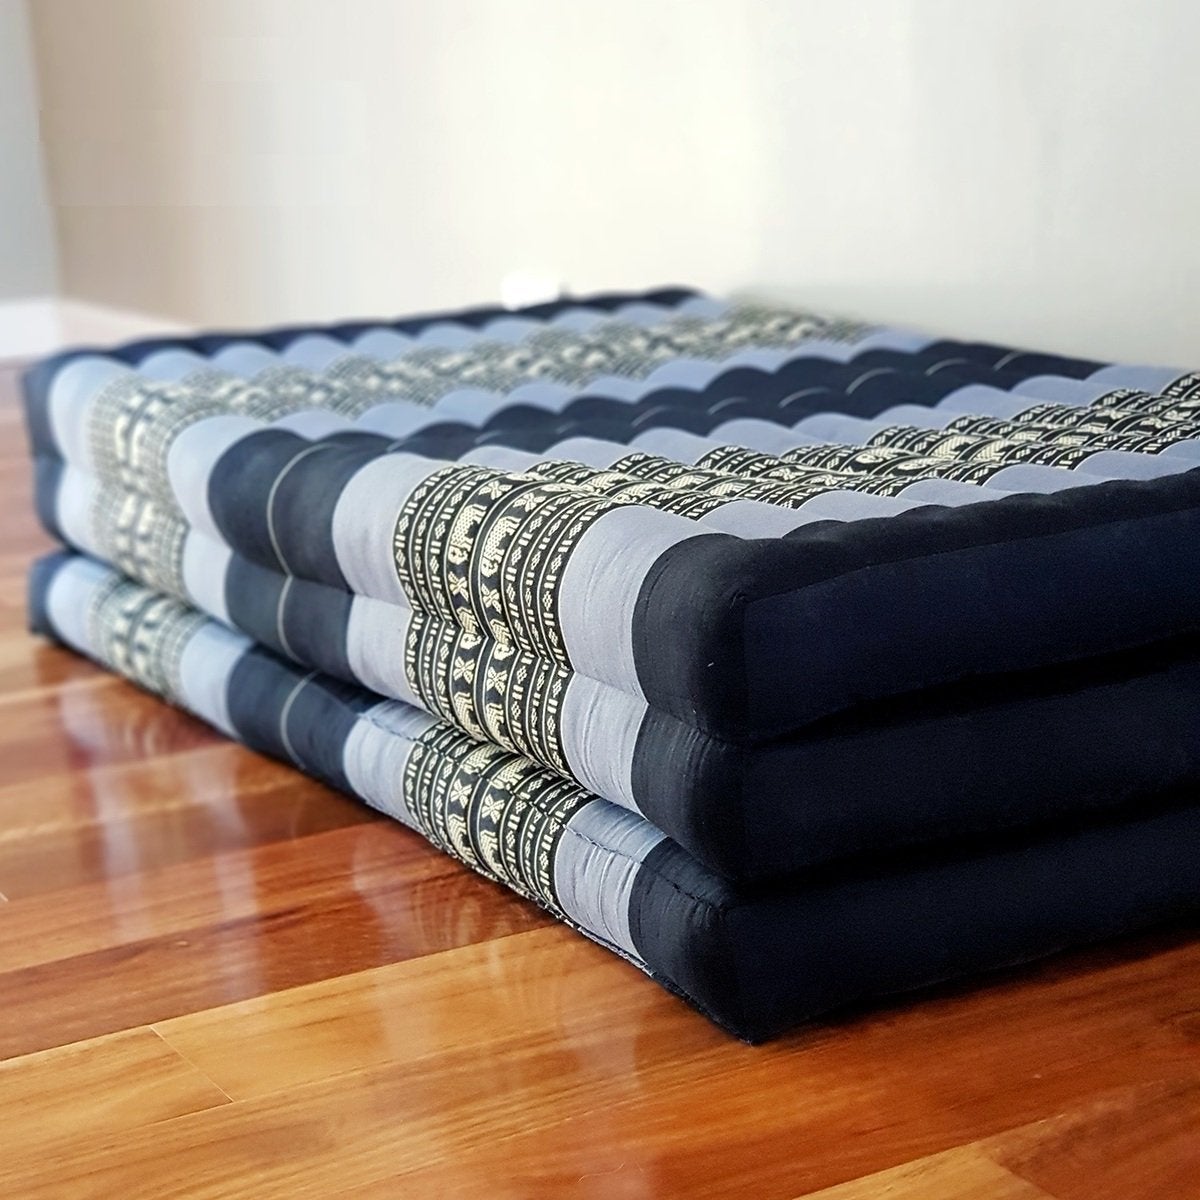 Thai kapok cushion KING Size Foldable Mattress Naturals Kapok Fibre Filled BlueEle